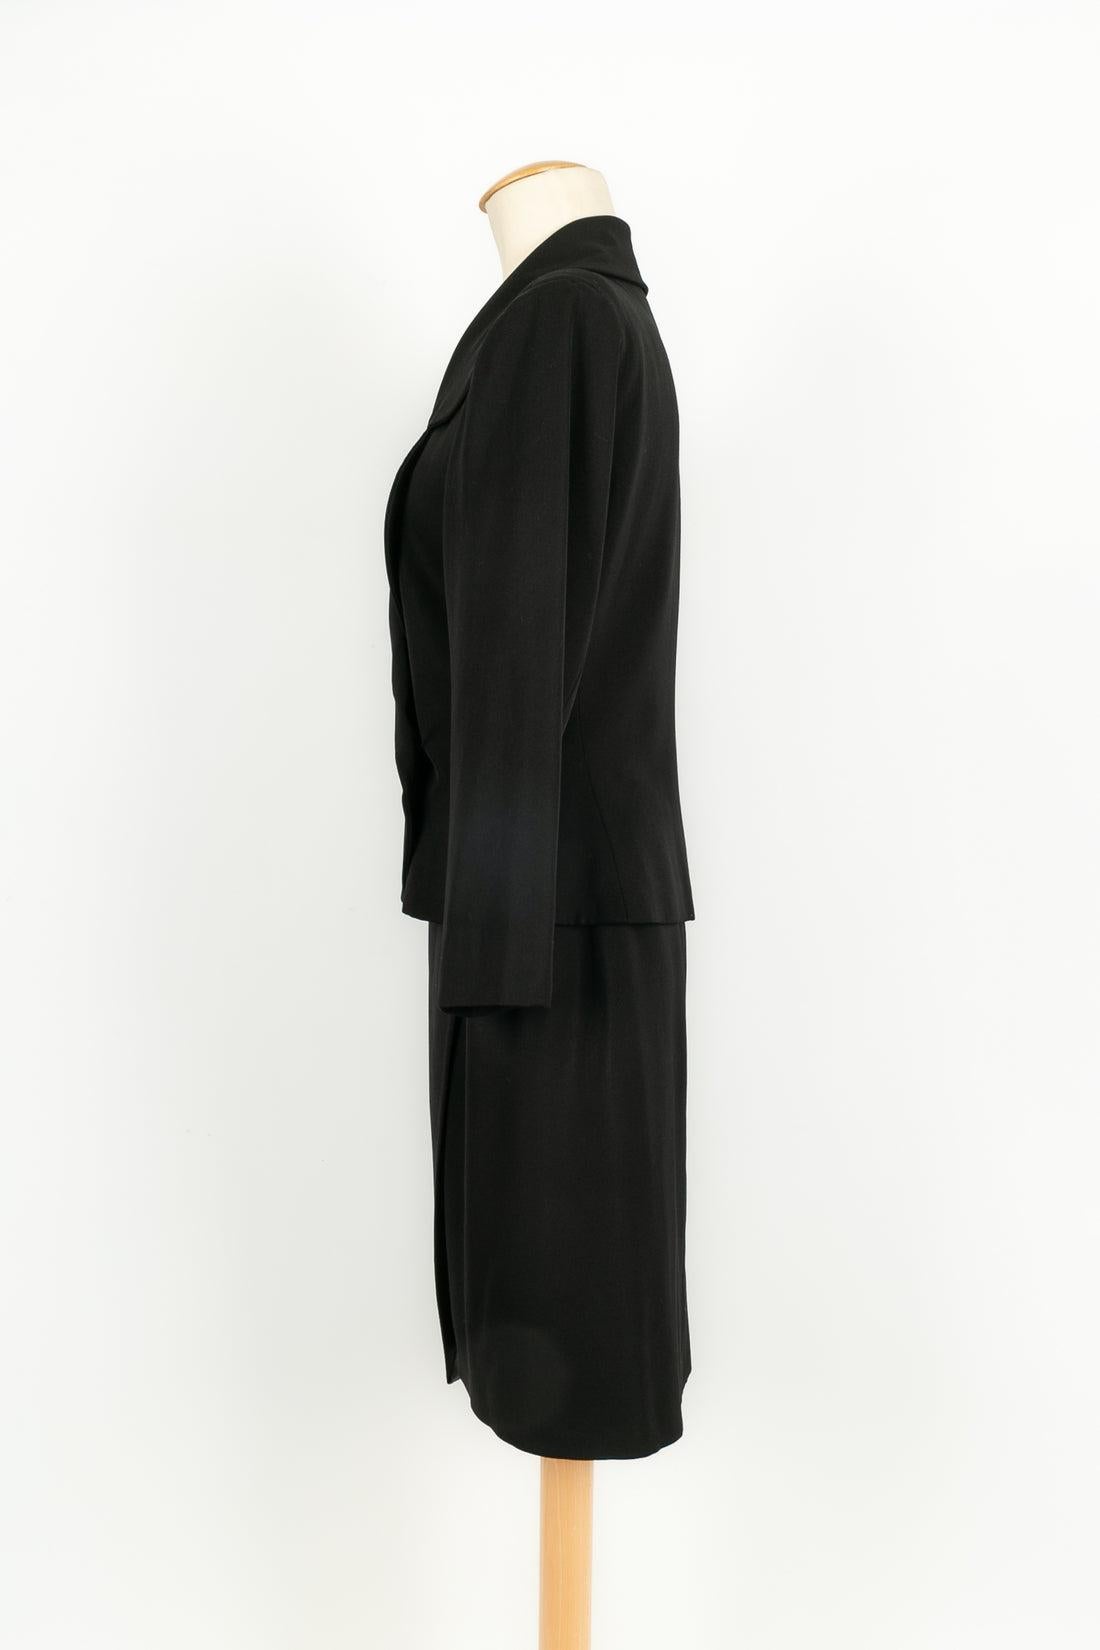 Women's Yves Saint Laurent Black Skirt Suit For Sale